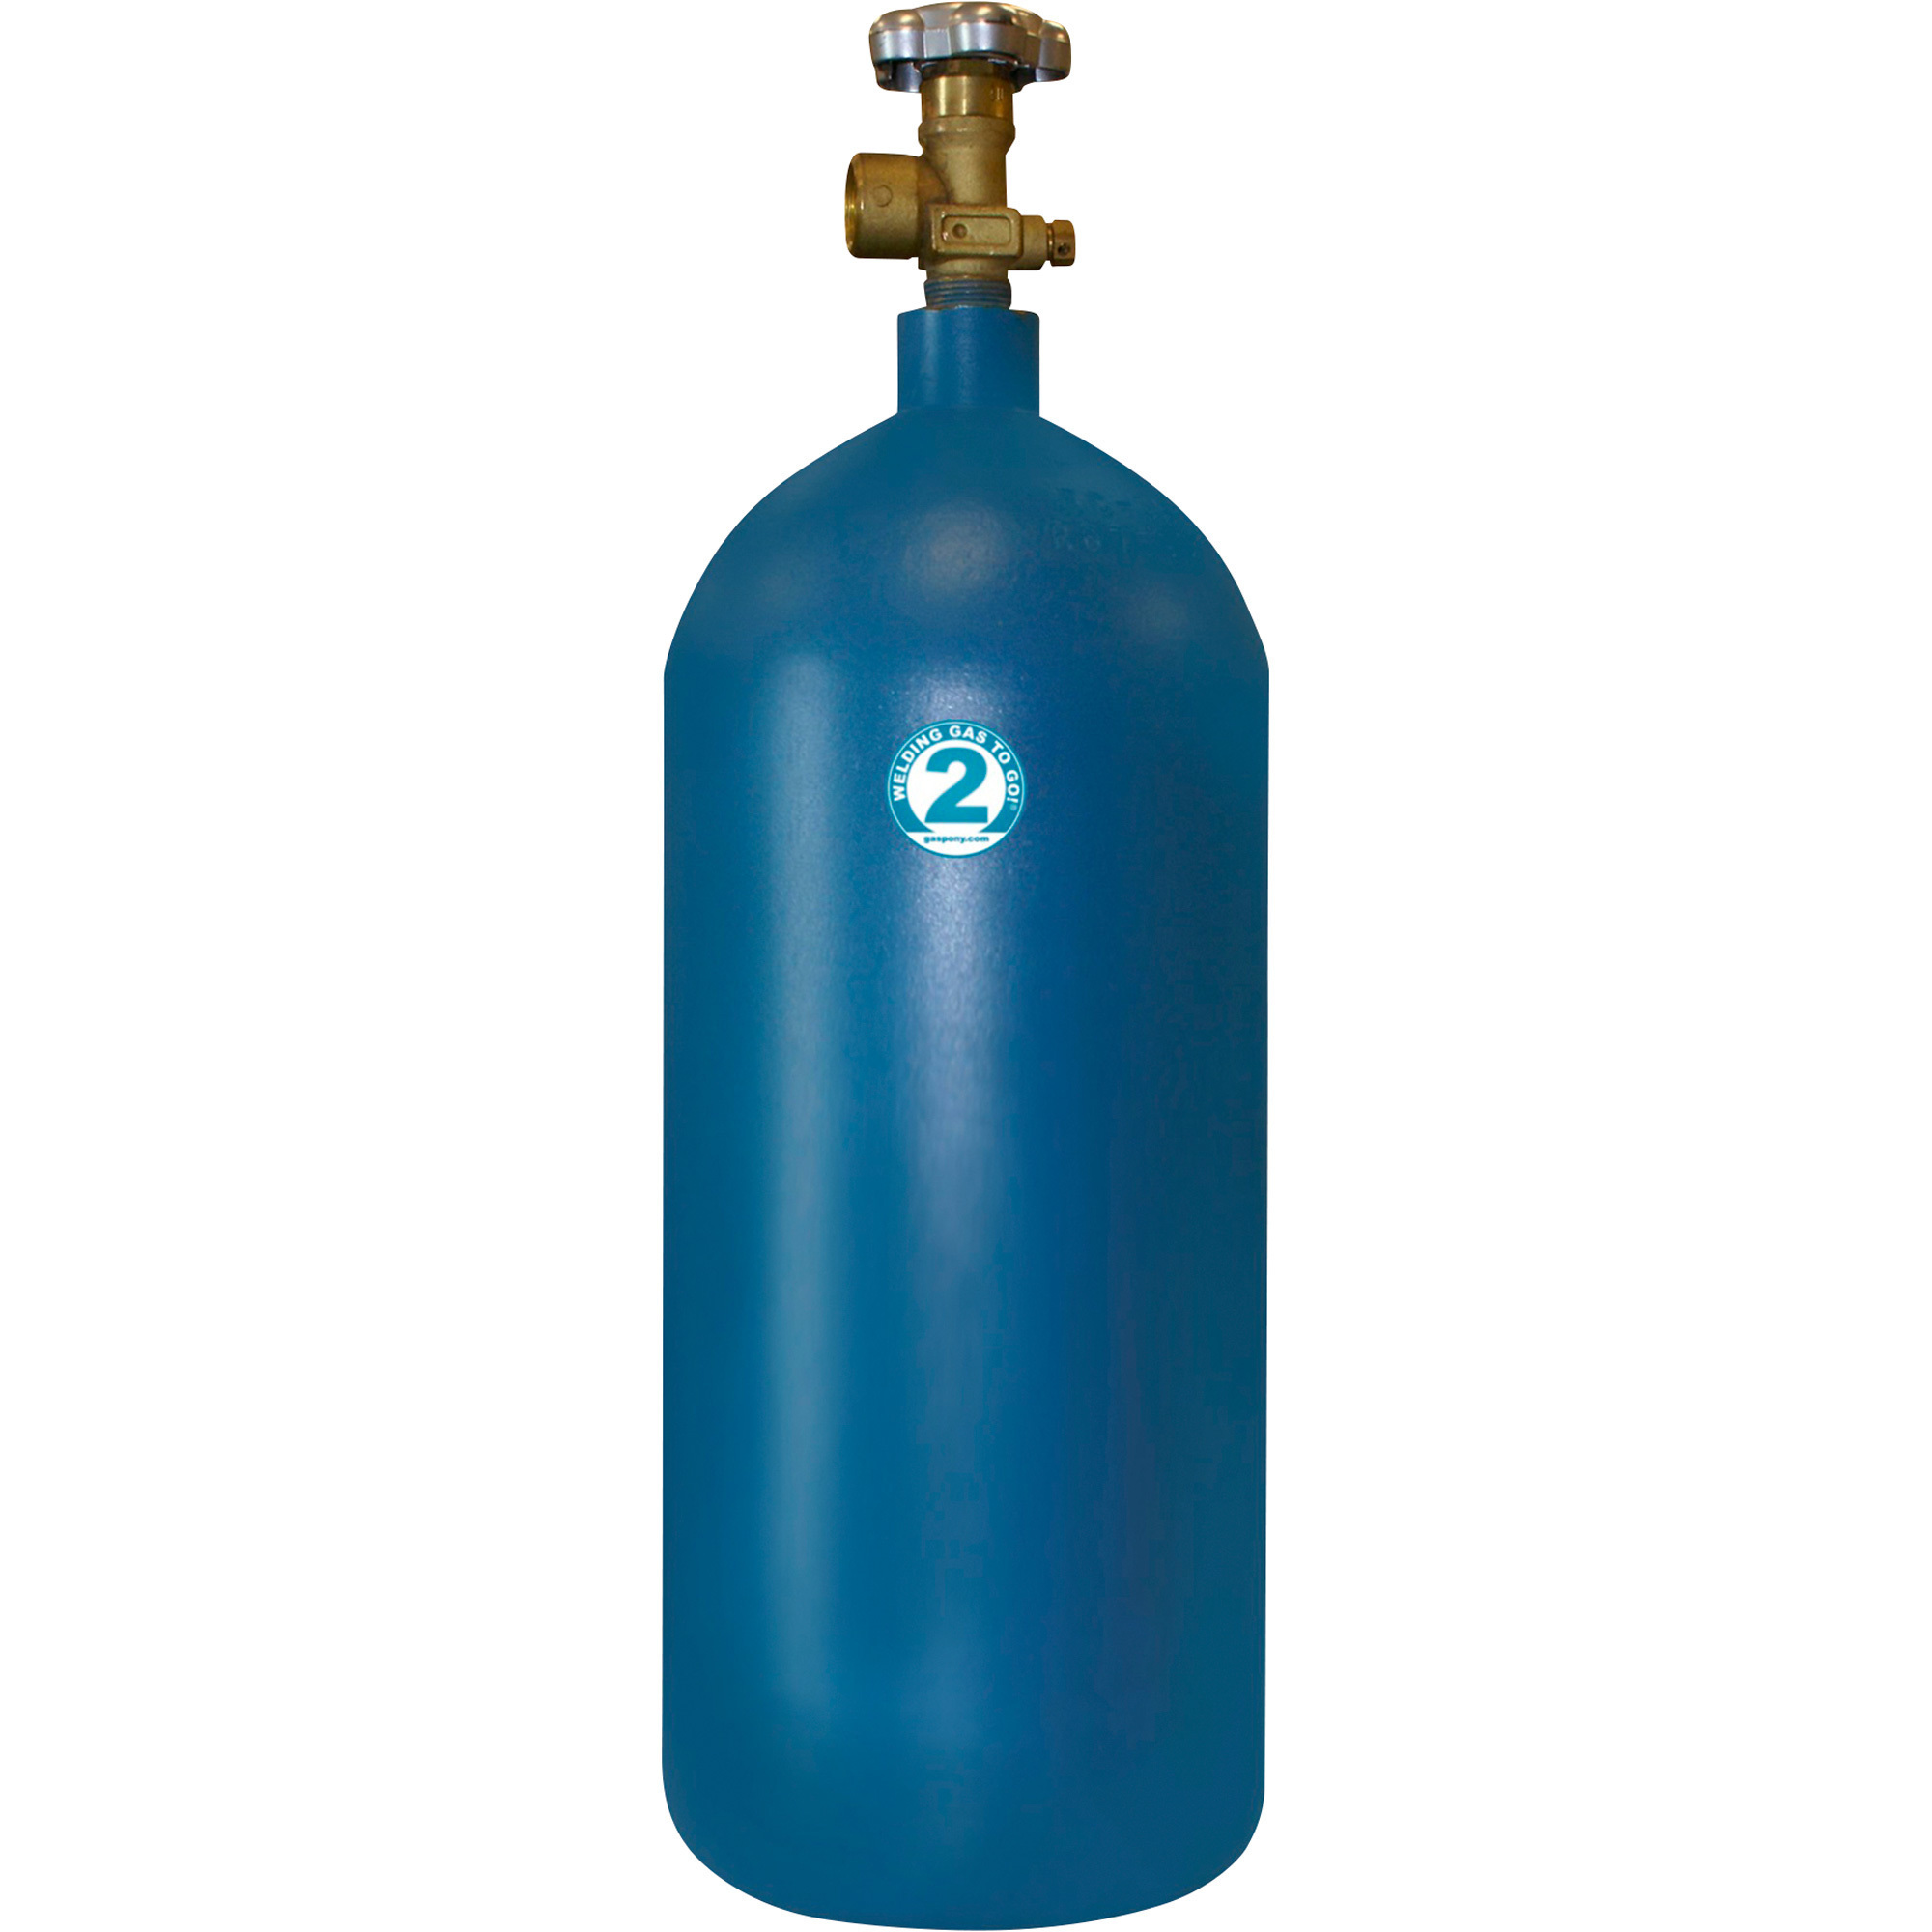 Thoroughbred 75/25 Argon/CO2 Gas Cylinder Exchange â Size #2, 40CF